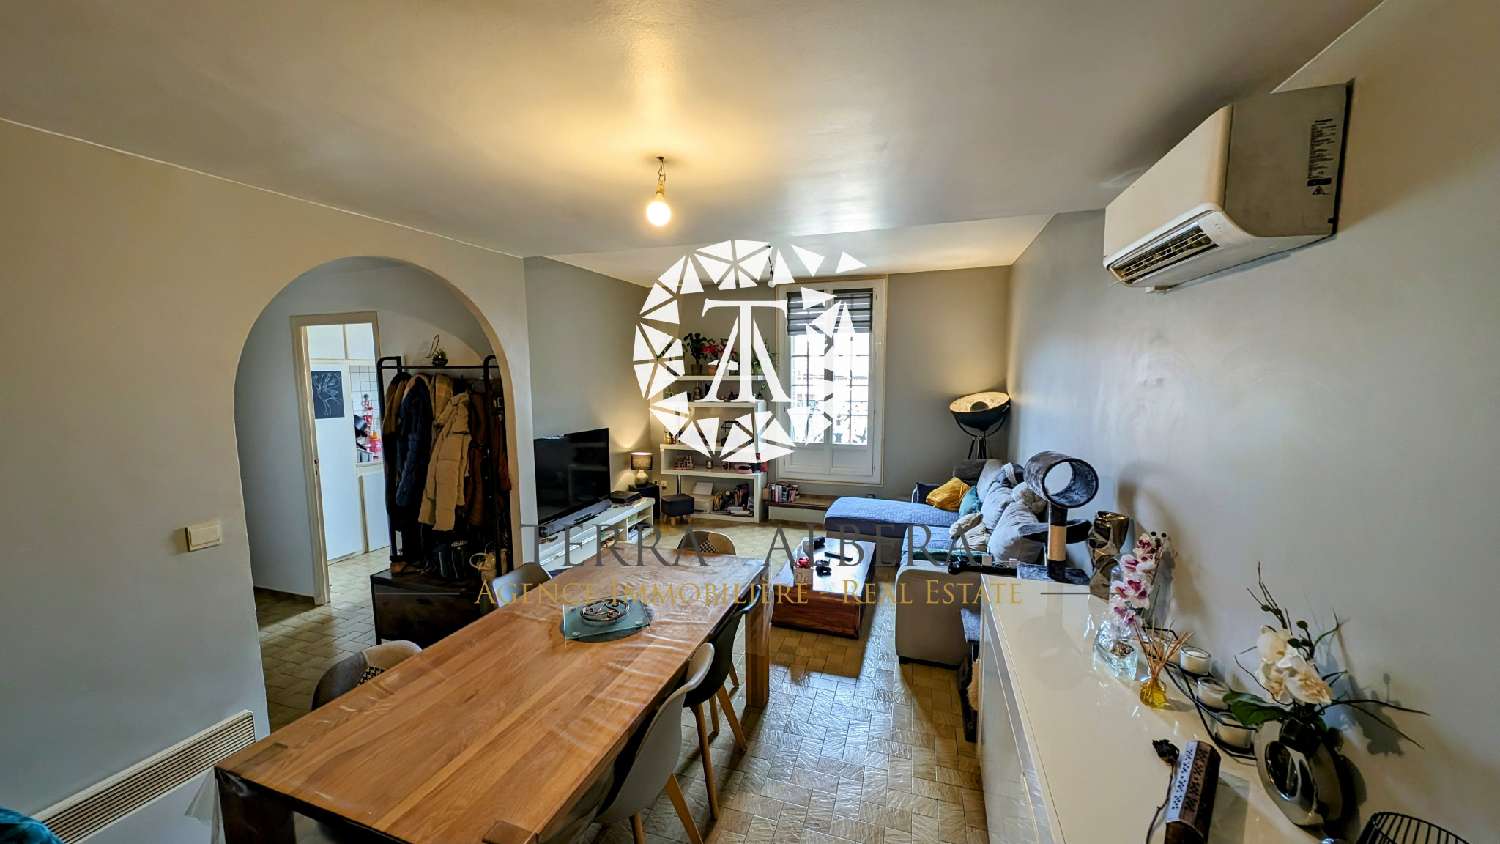  à vendre appartement Laroque-des-Albères Pyrénées-Orientales 2